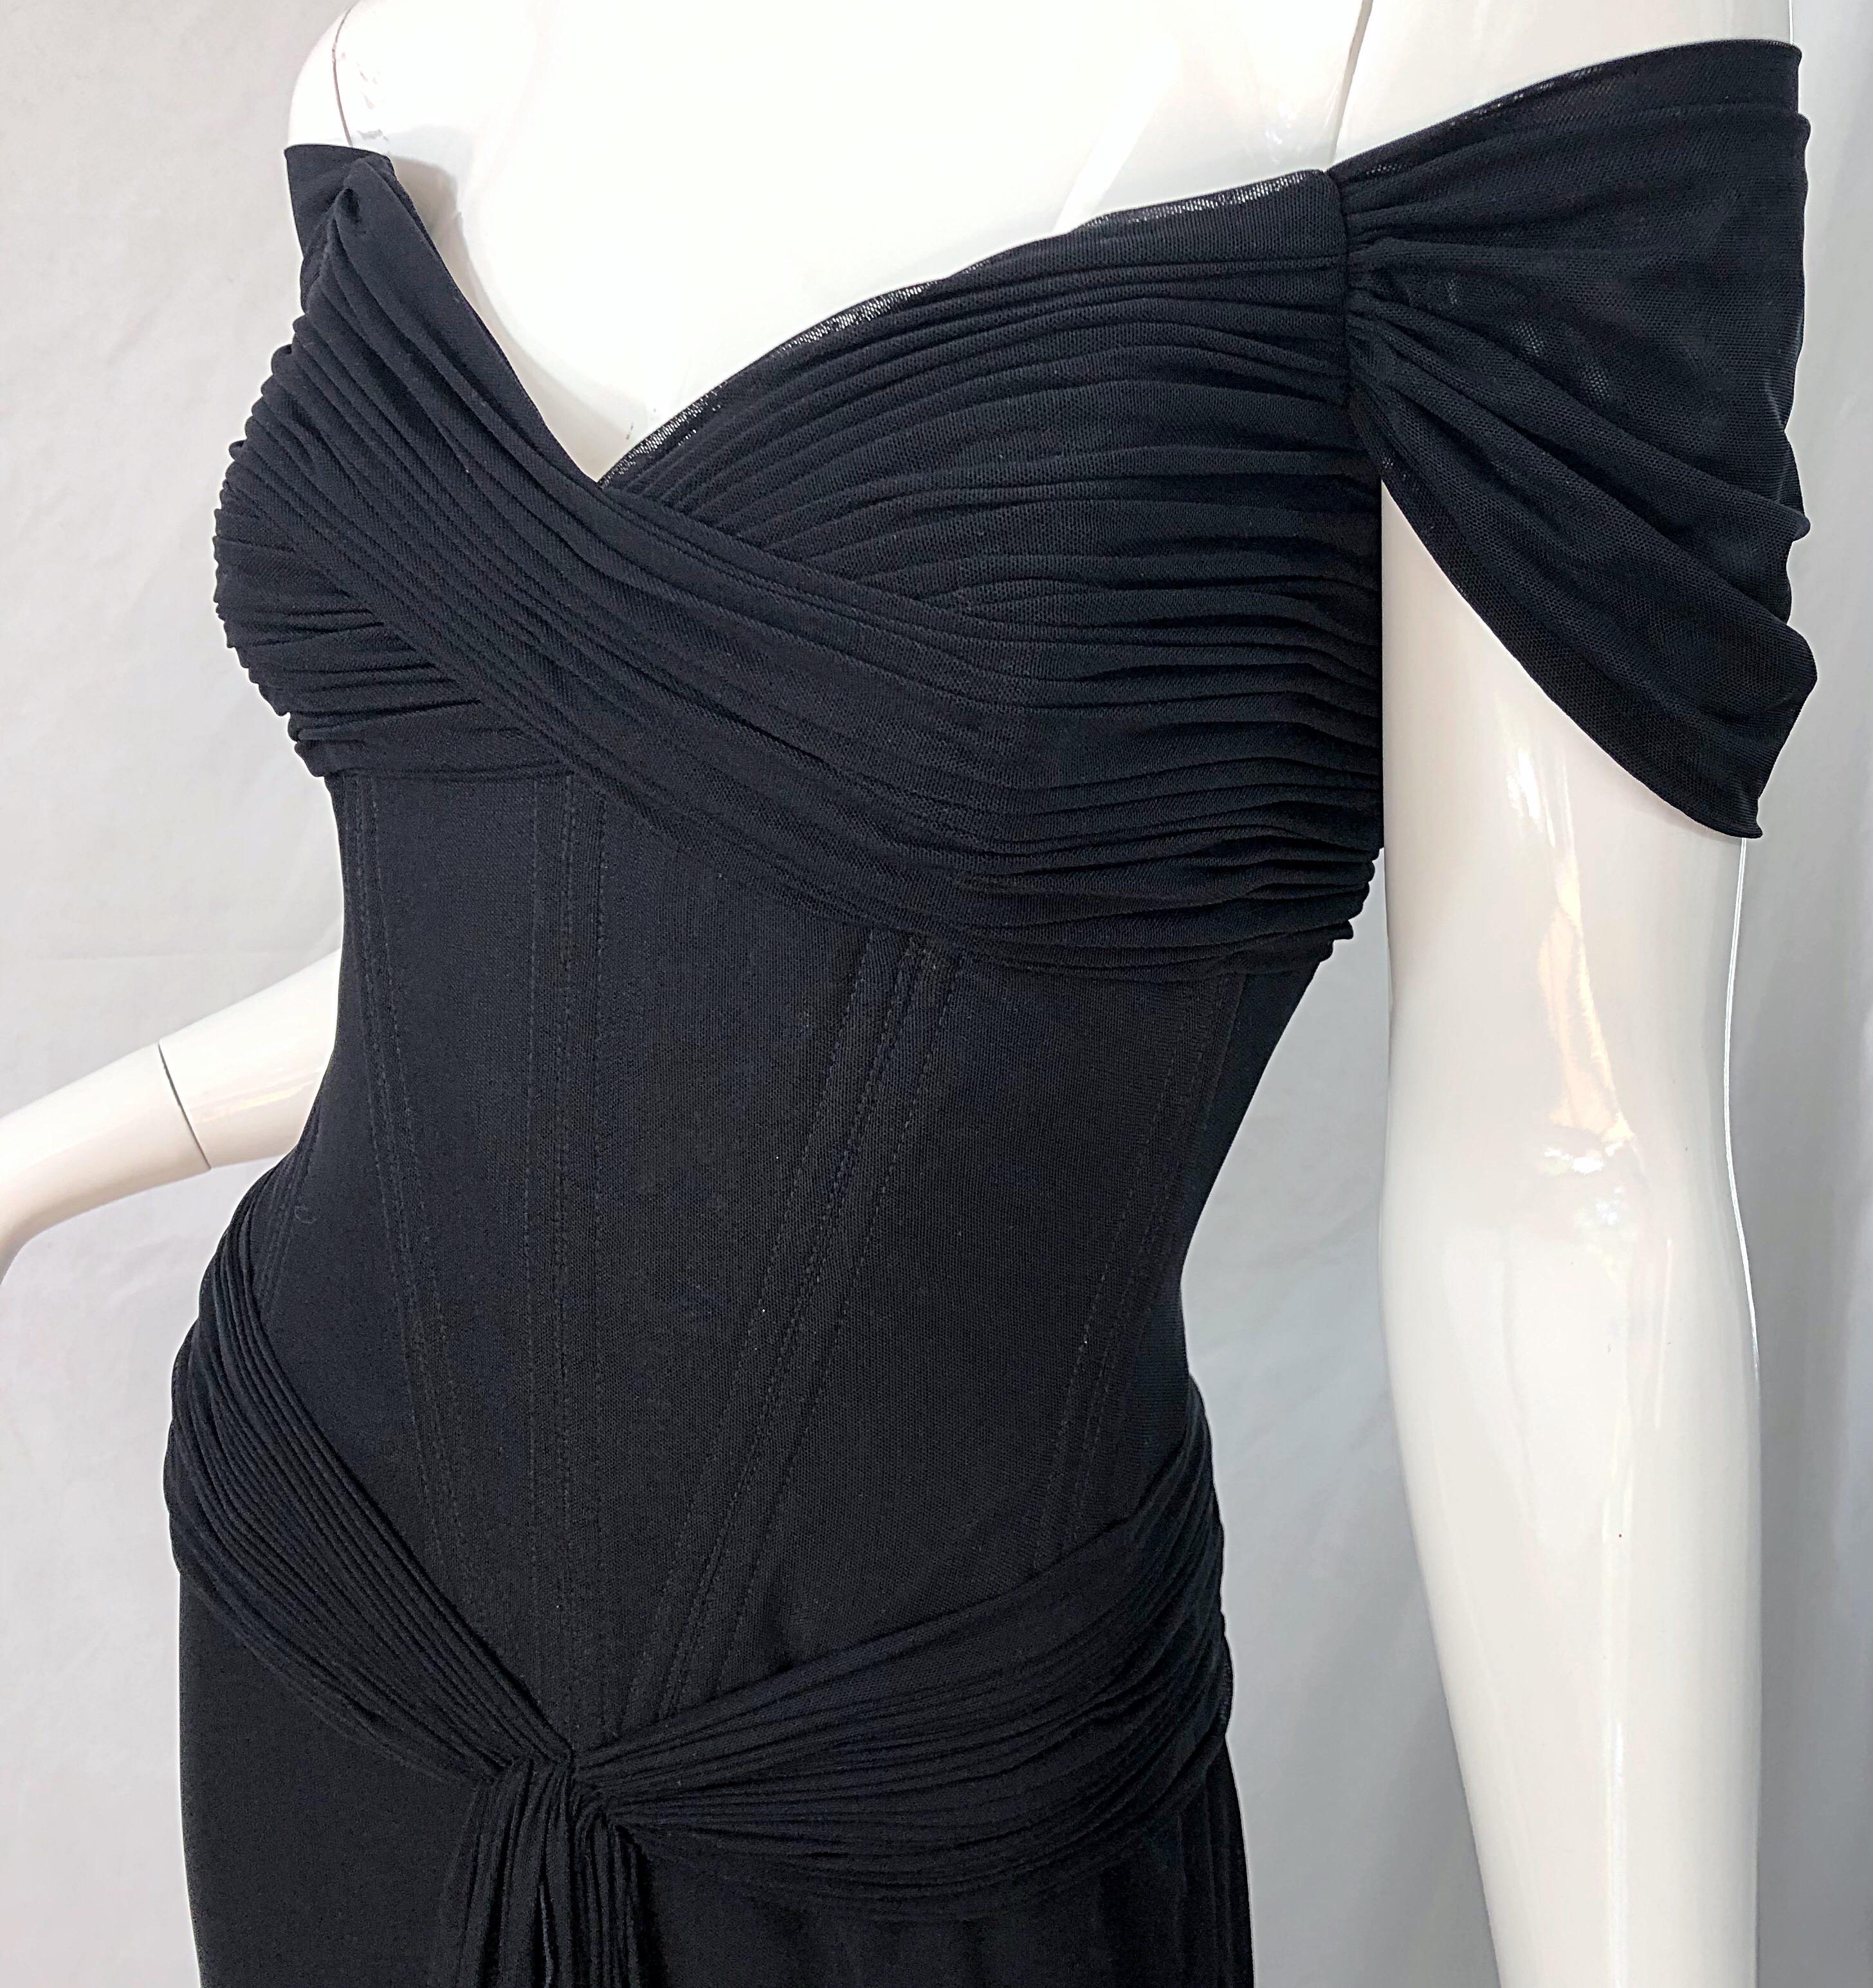 black gucci dress from pretty woman